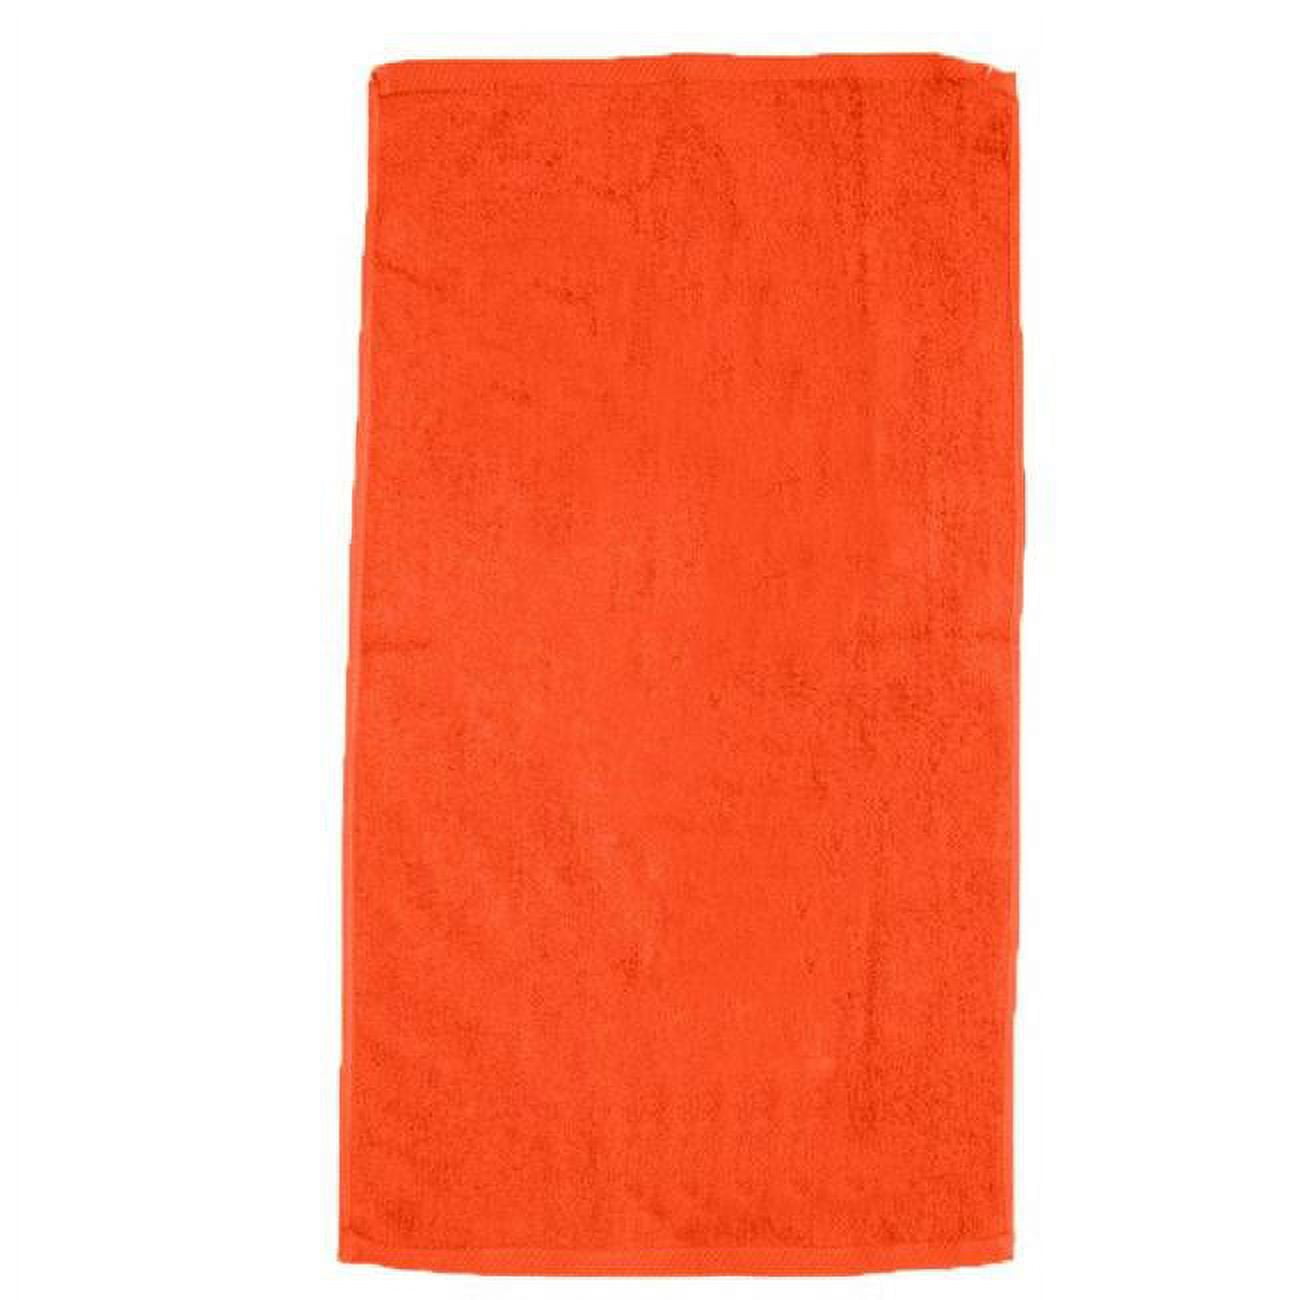 2327074 30 X 60 In. Ddi Beach Towels, Orange - Case Of 12